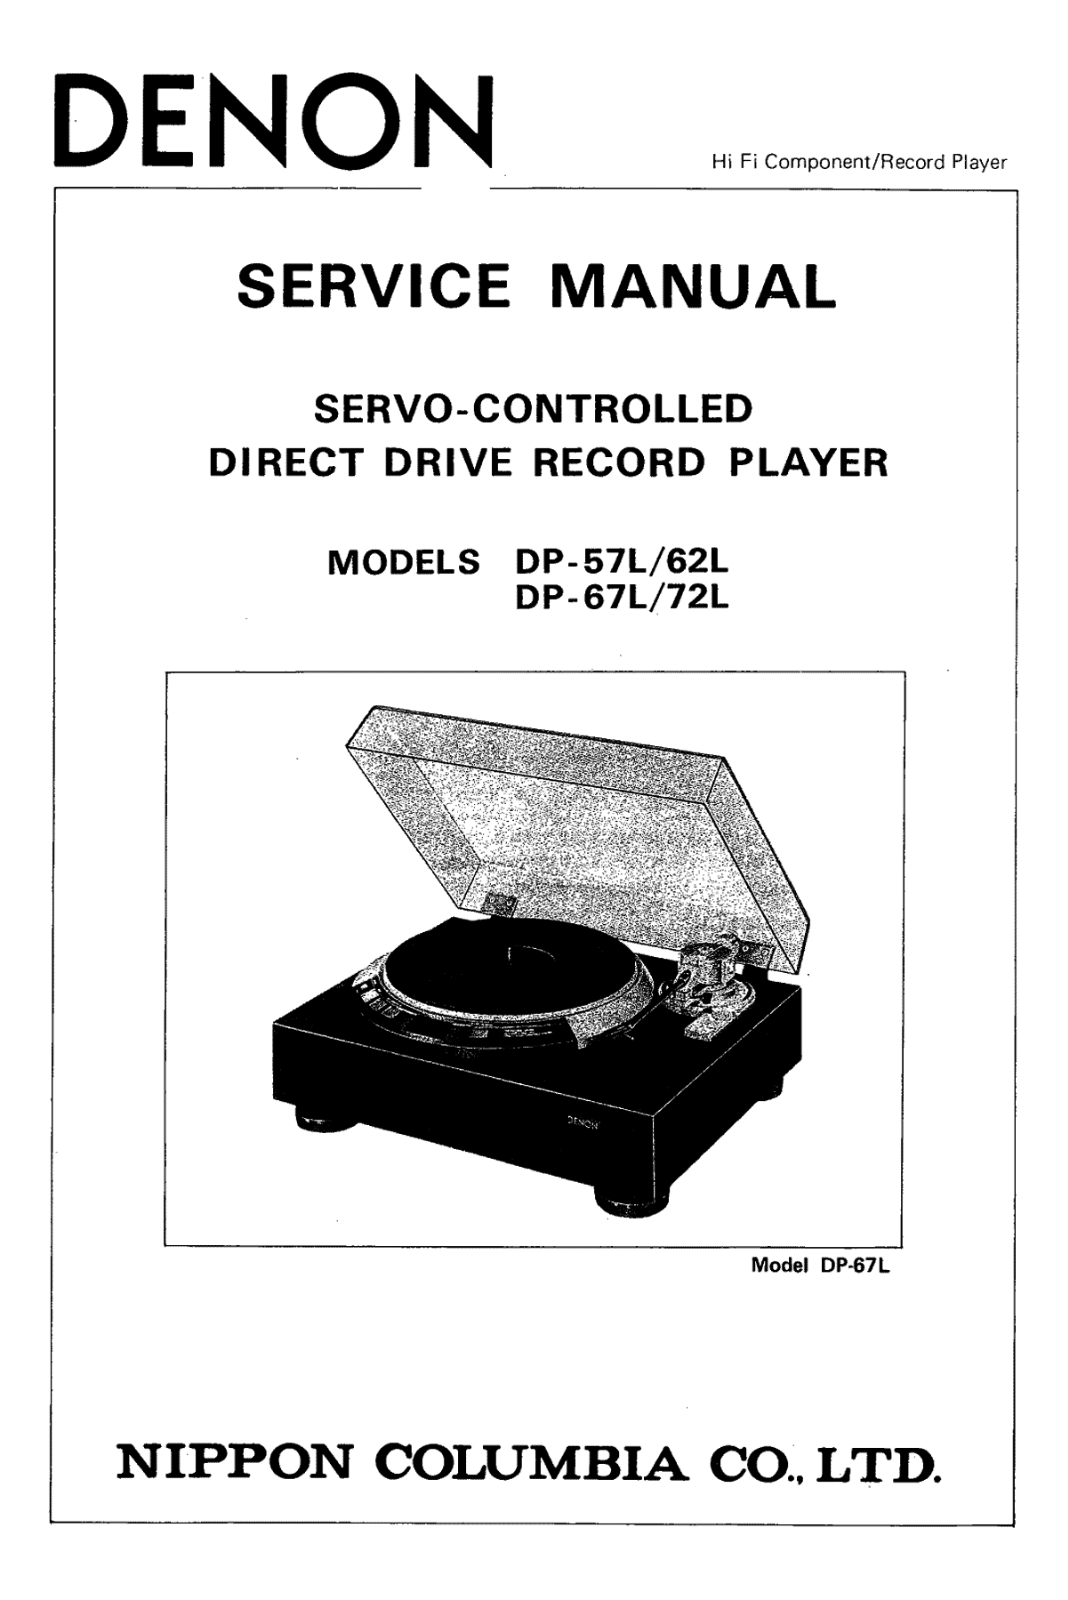 Denon DP-57L, DP-62L, DP-67L, DP-72L Service Manual